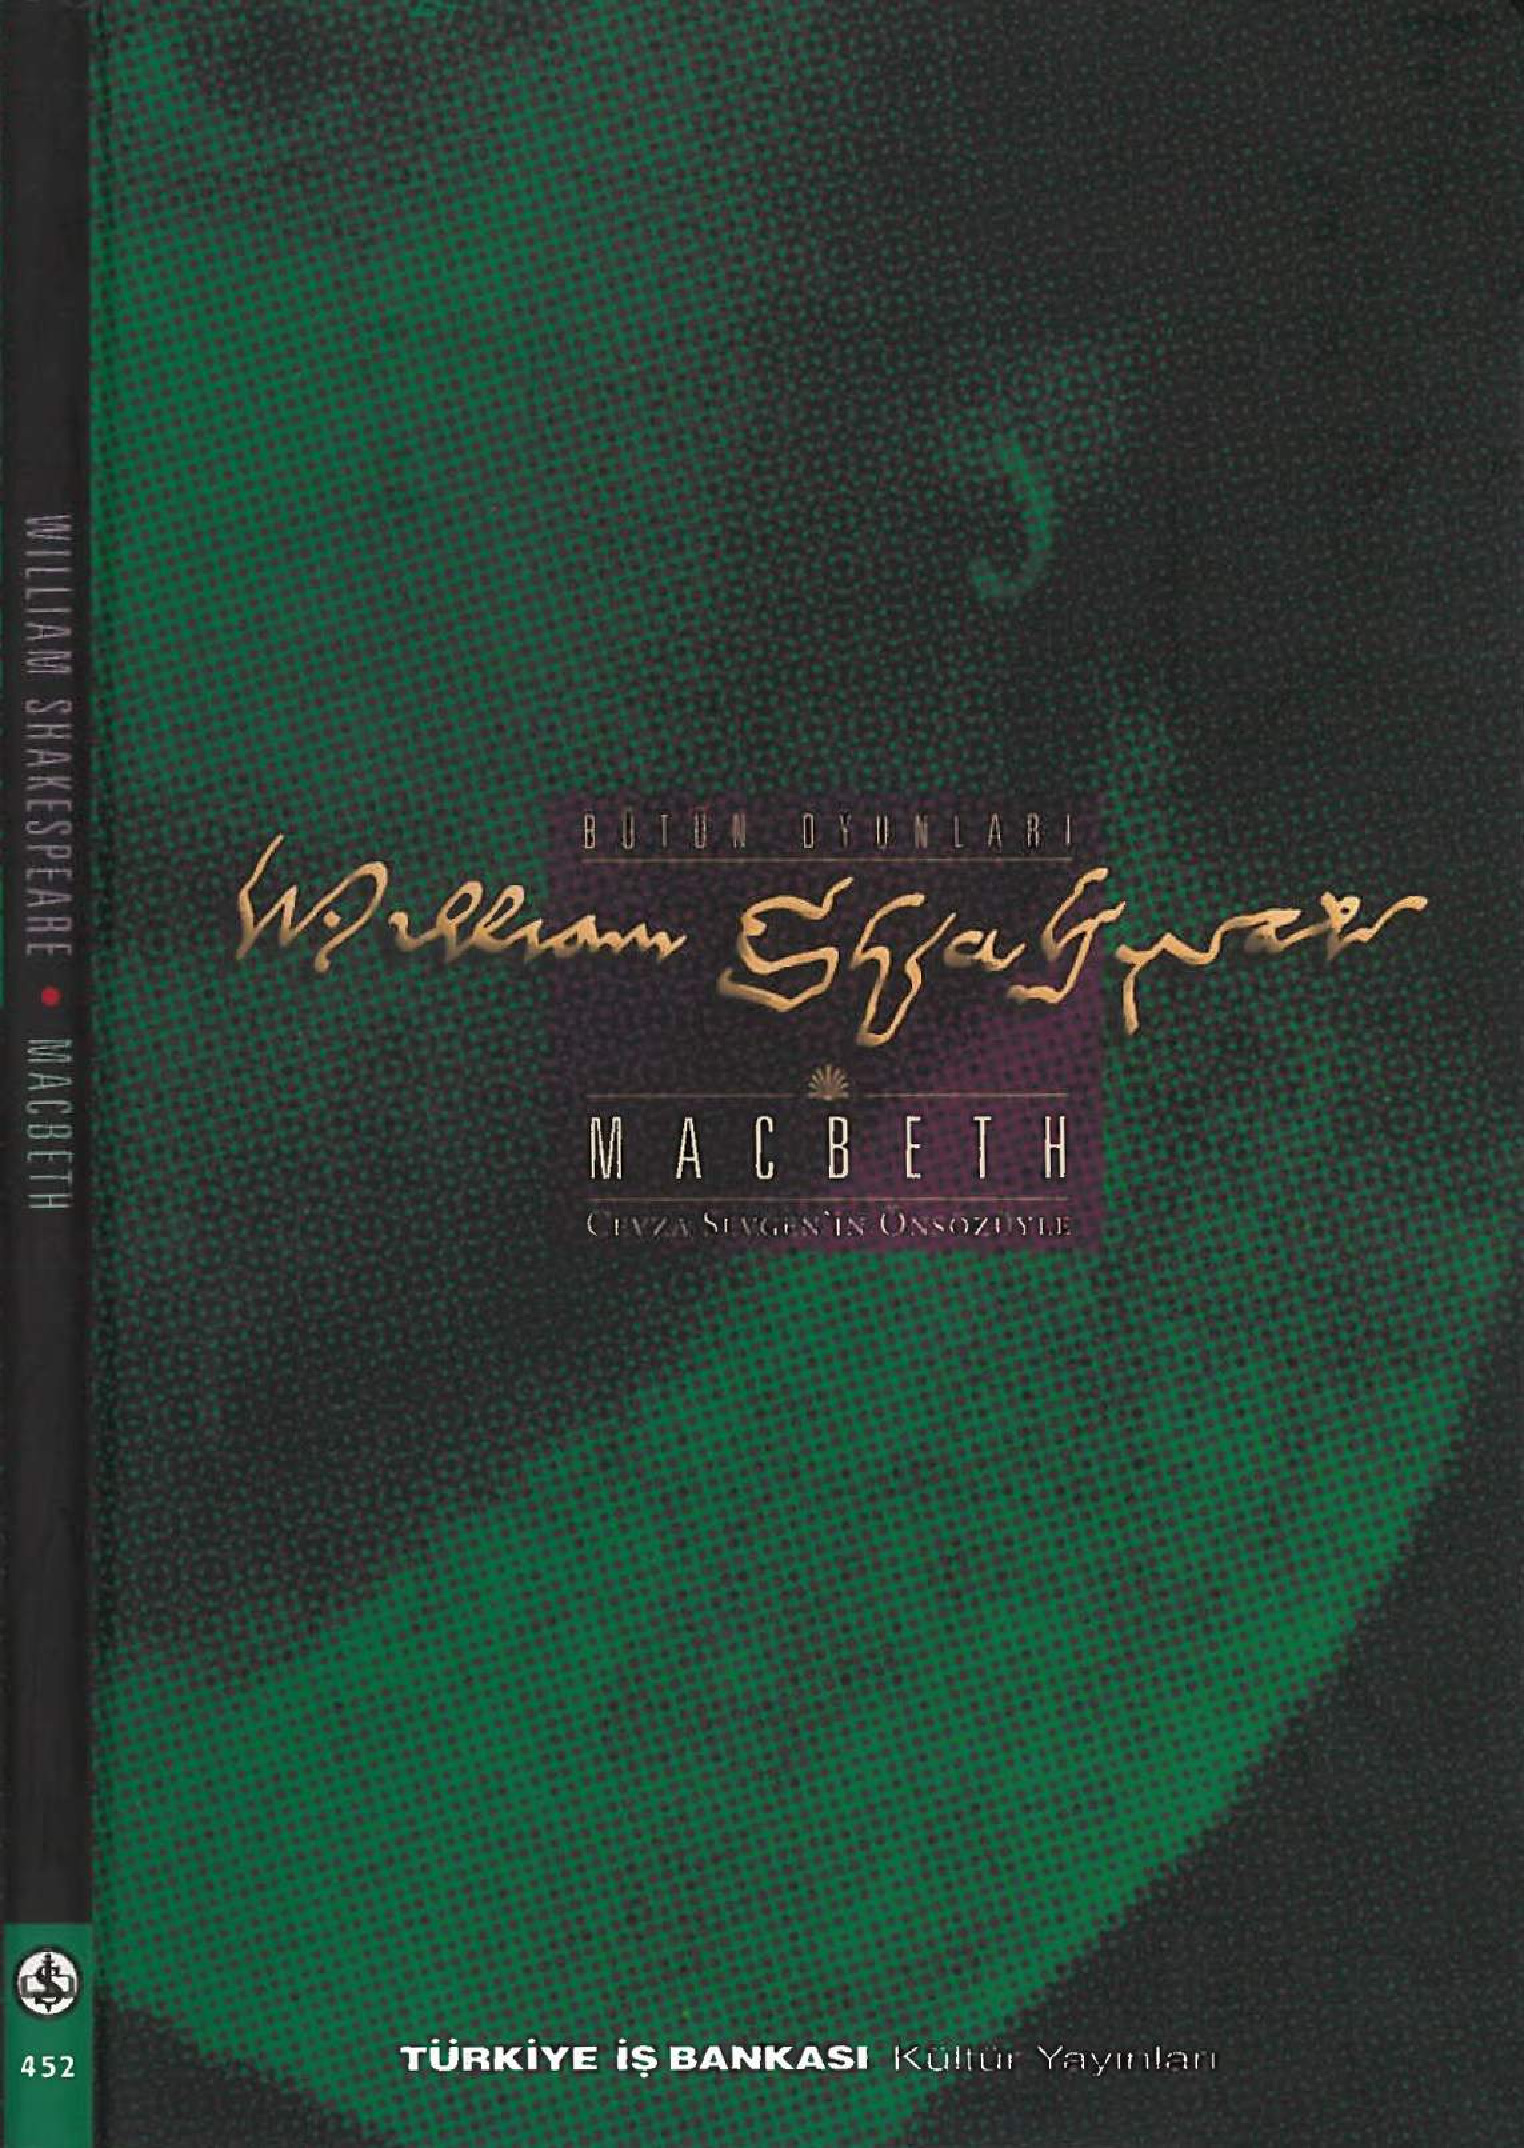 Macbeth-William Shakespeare- Sabahetdin Eyuboğlu-2002-157S